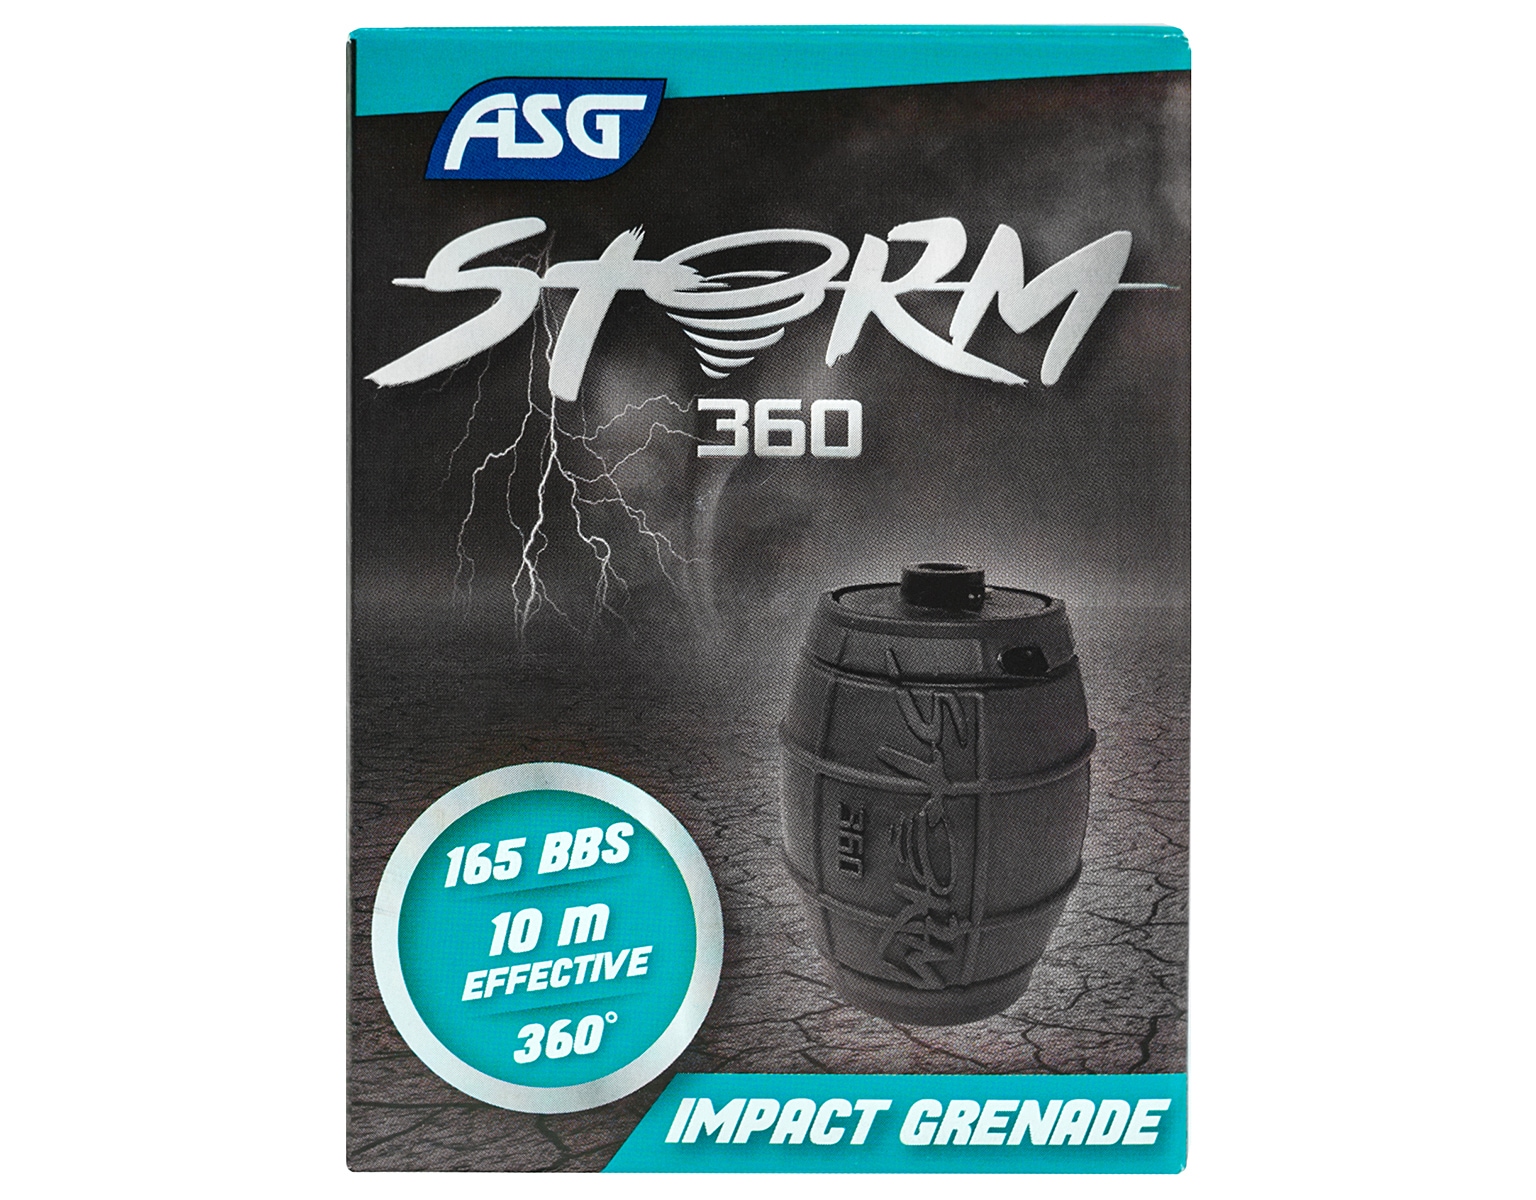 Granat ASG Storm 360 - red